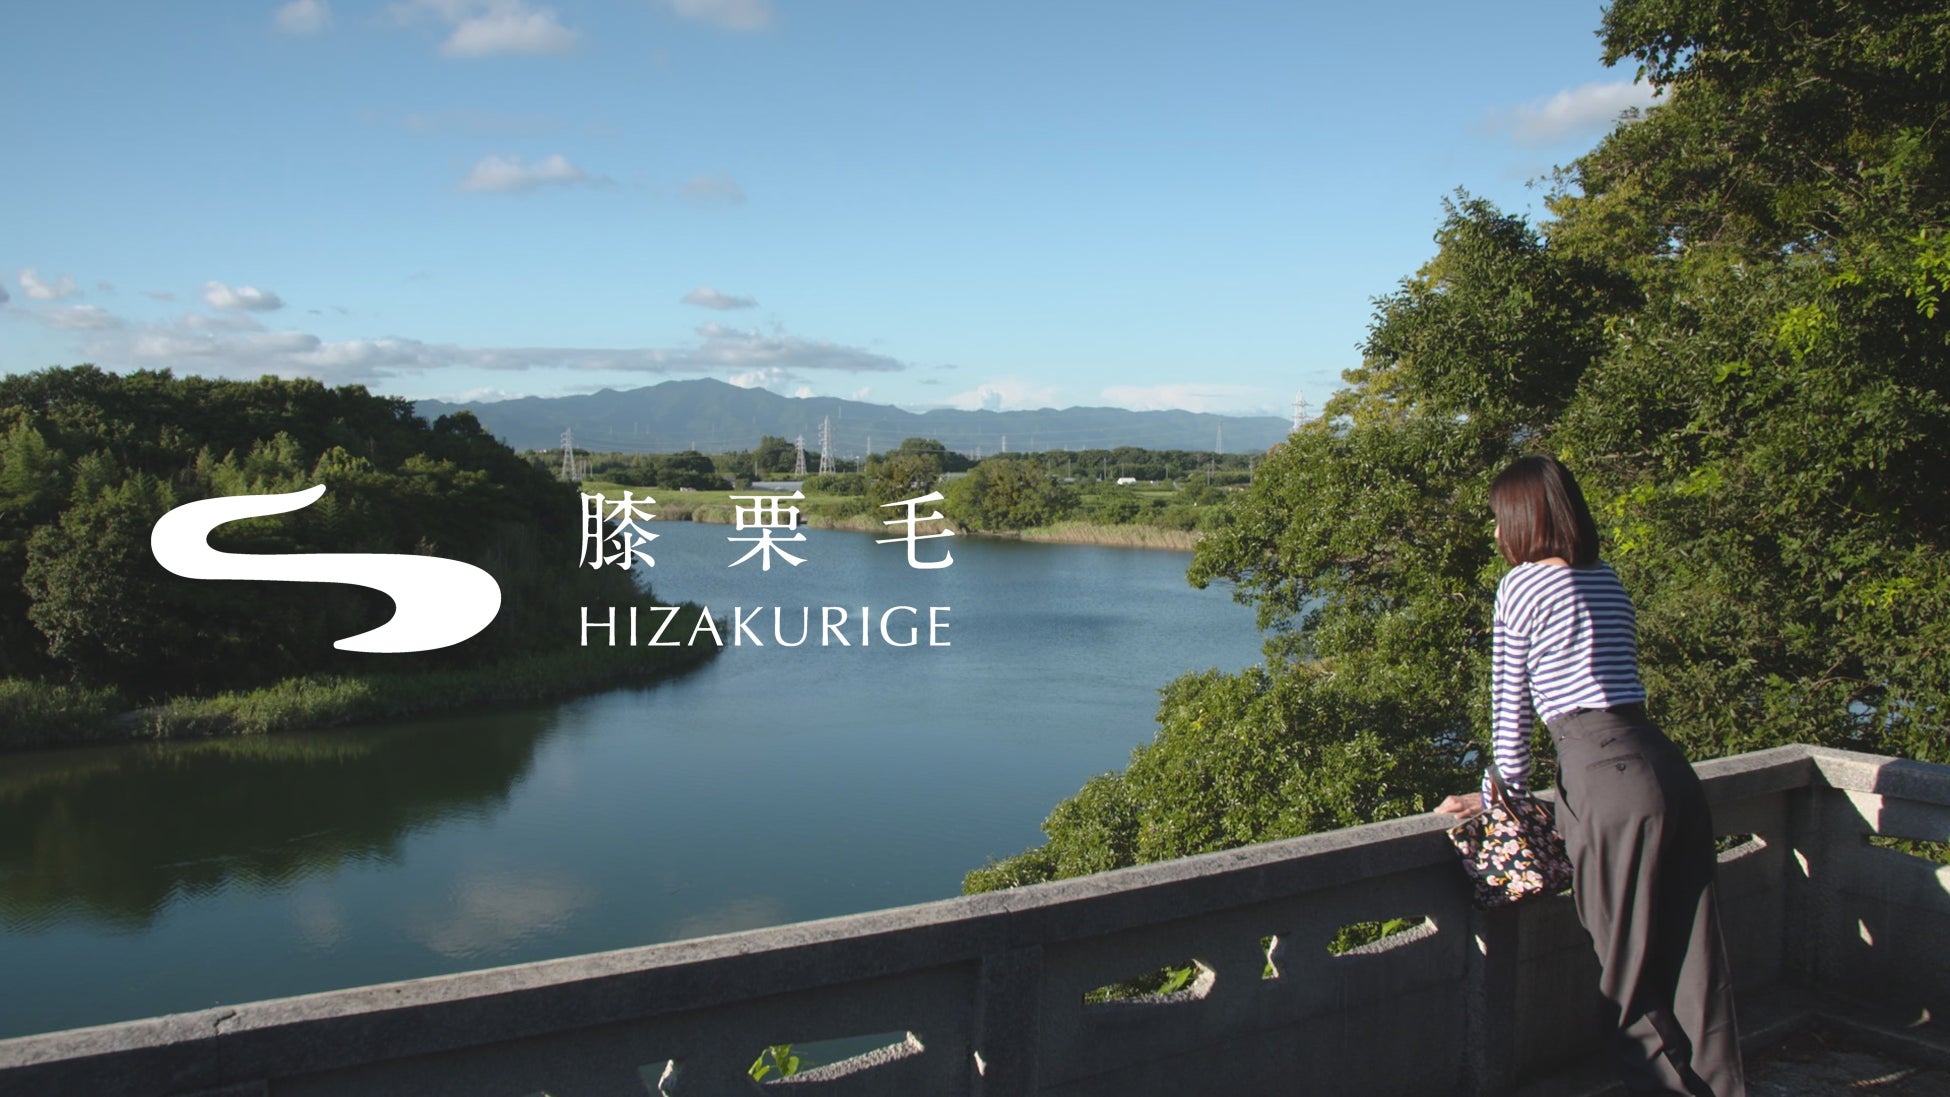 【VMG HOTELS & UNIQUE VENUES】京都東山のラグジュアリーレストラン「アカガネリゾート」が五重の塔として知られる法観寺や一般非公開の庭園・月真院を拝観できるランチプランを販売開始